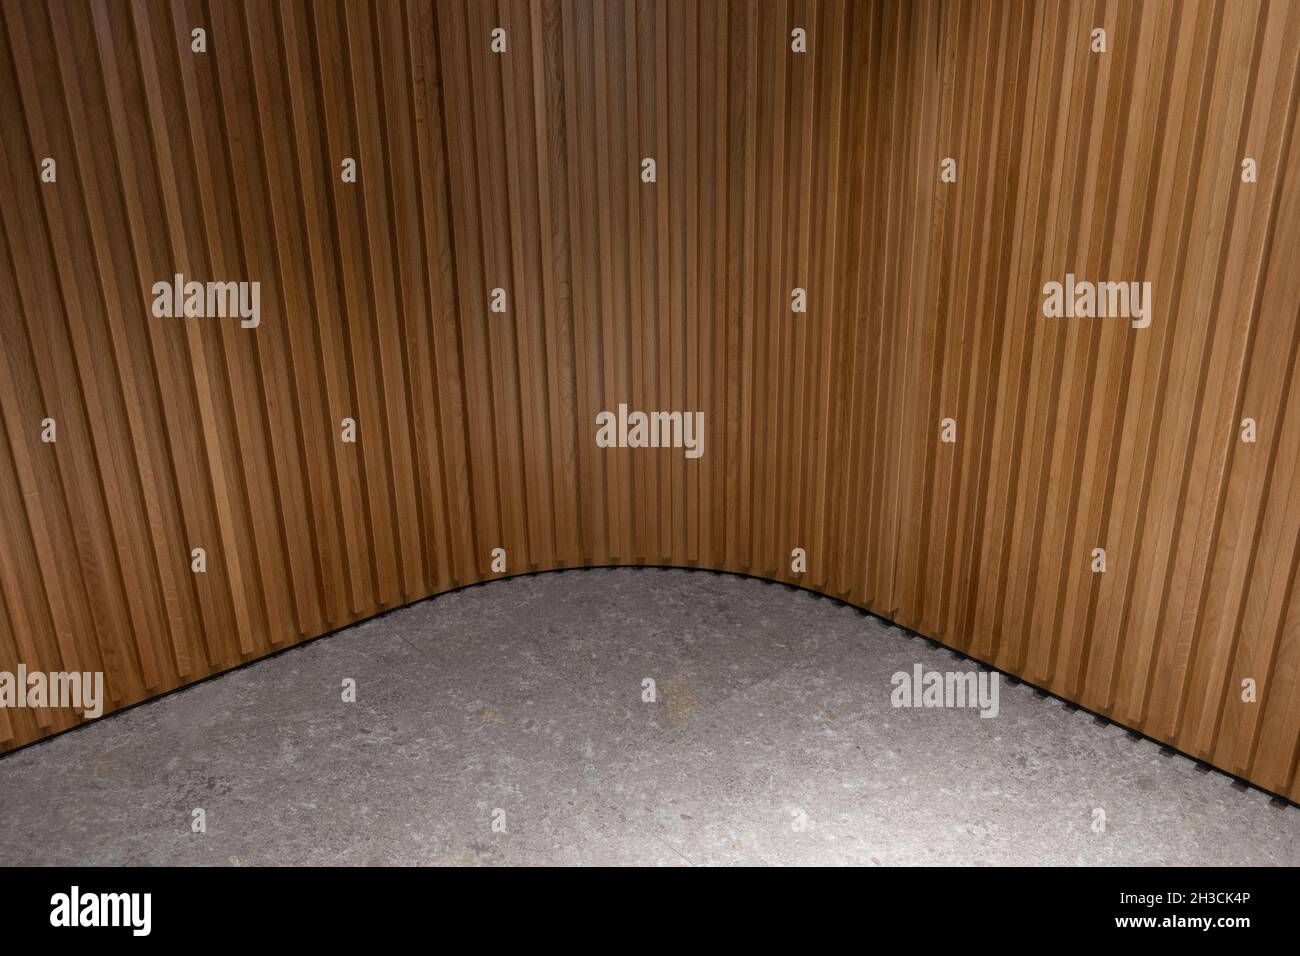 Combinaison mur en bois nervuré et sol en pierre.Panneau texturé en bois et carrelage en pierre grise.Design intérieur en coin rond. Banque D'Images